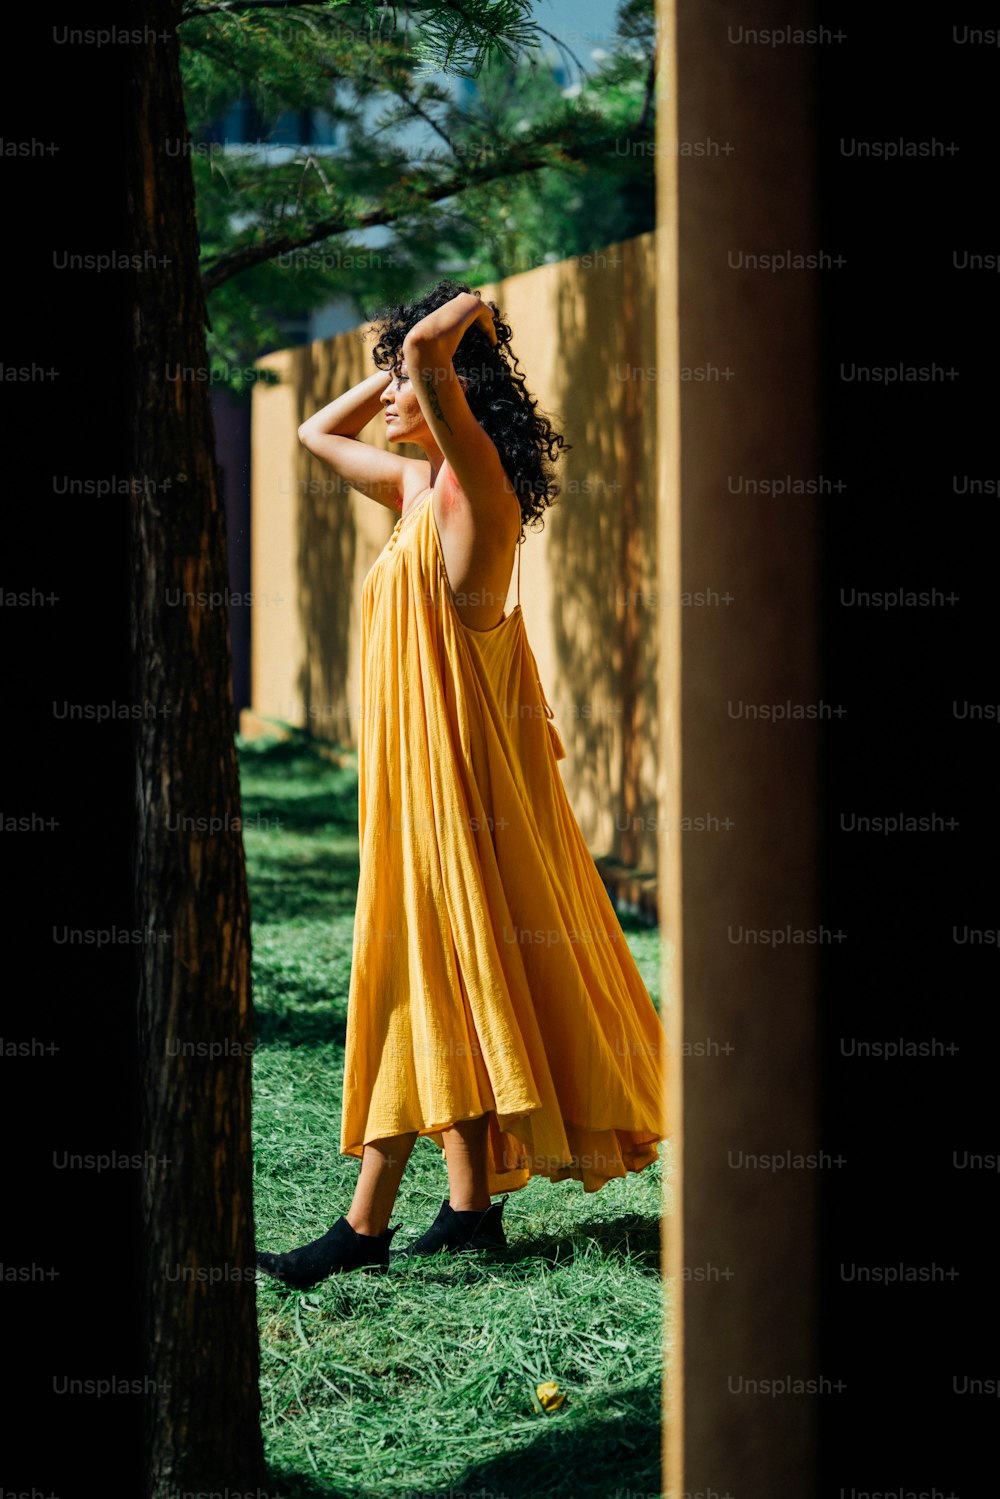 풀밭에 서 있는 노란 드레스를 입은 여자